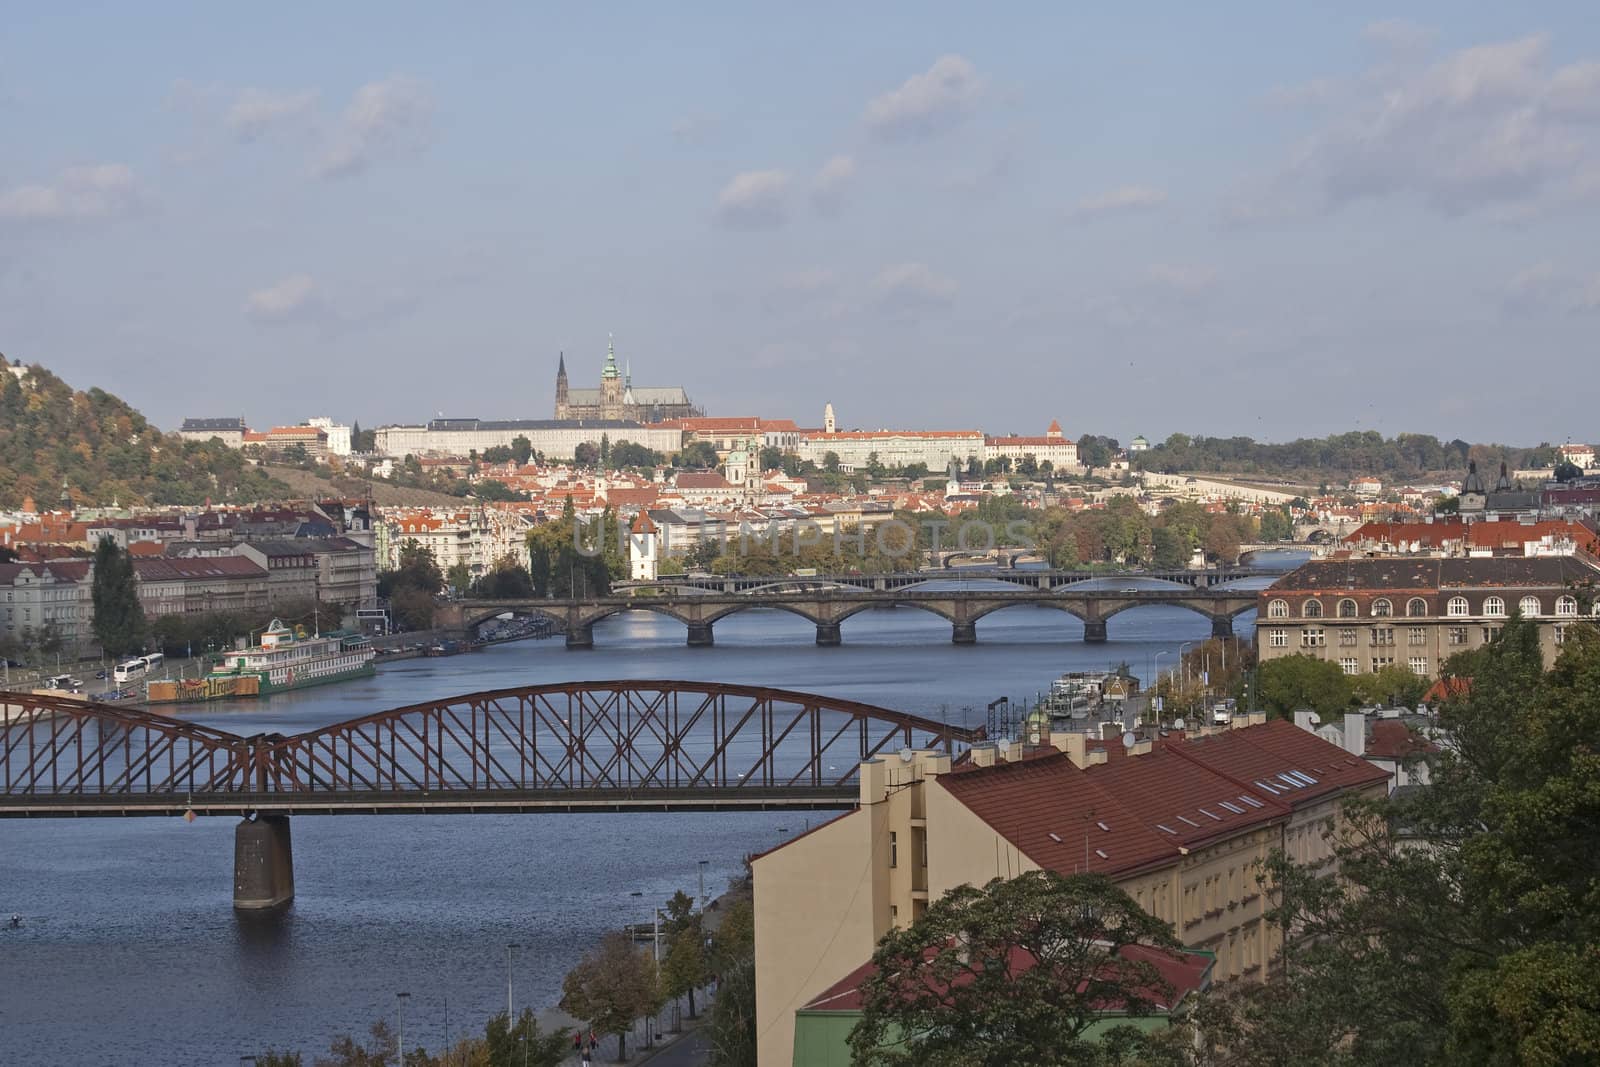  	
panorama, Prague, the Vltava river, bridges